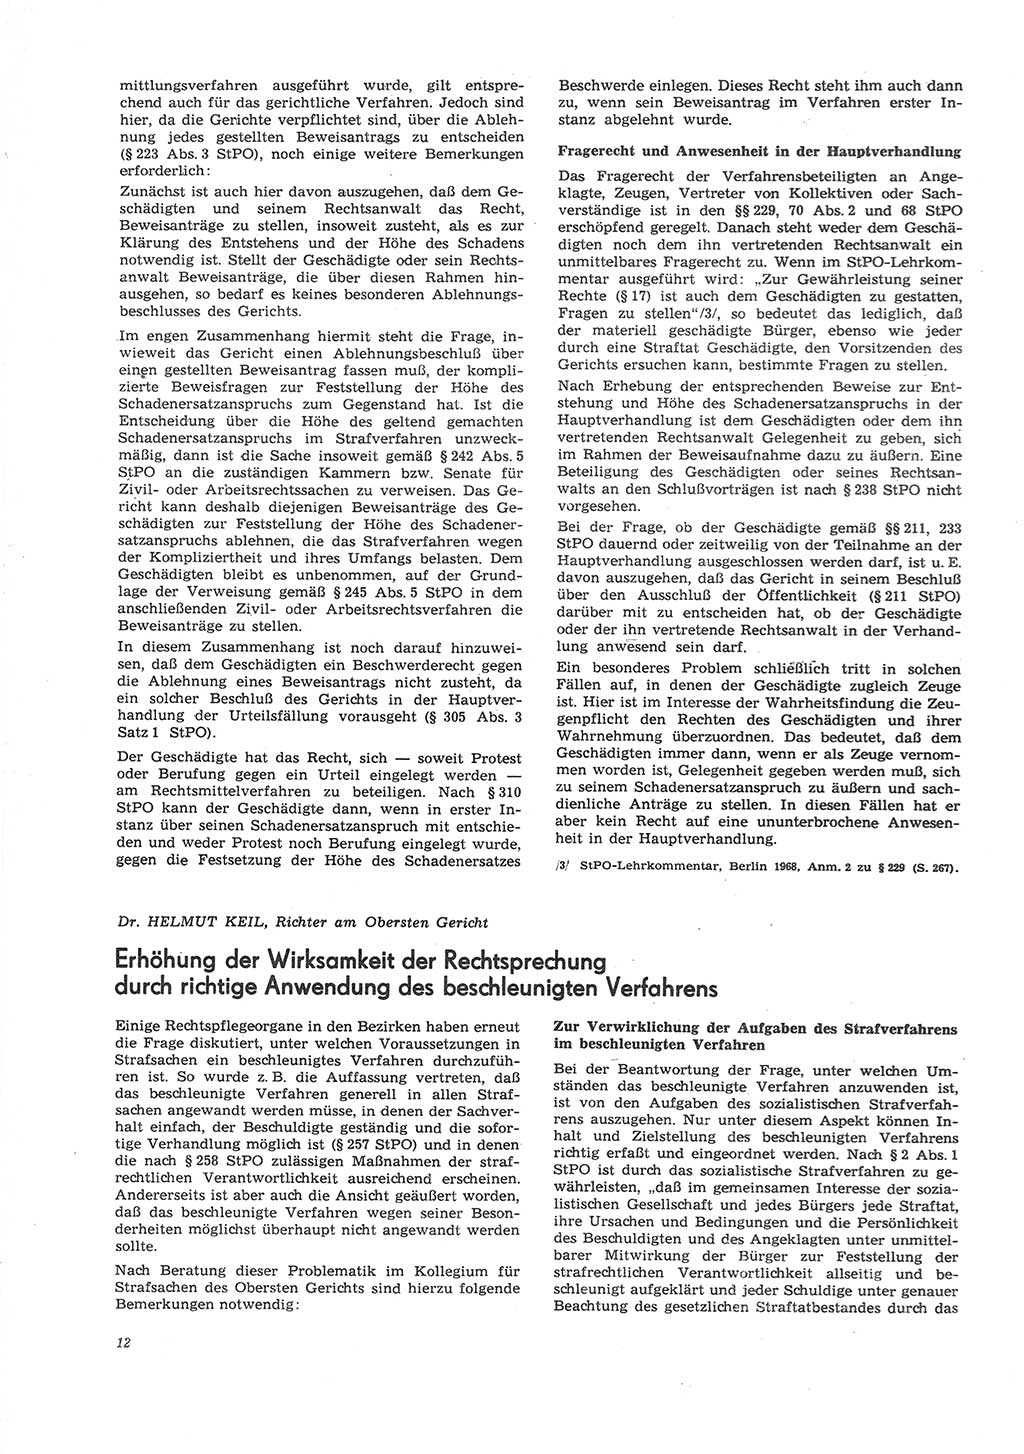 Neue Justiz (NJ), Zeitschrift für Recht und Rechtswissenschaft [Deutsche Demokratische Republik (DDR)], 26. Jahrgang 1972, Seite 12 (NJ DDR 1972, S. 12)